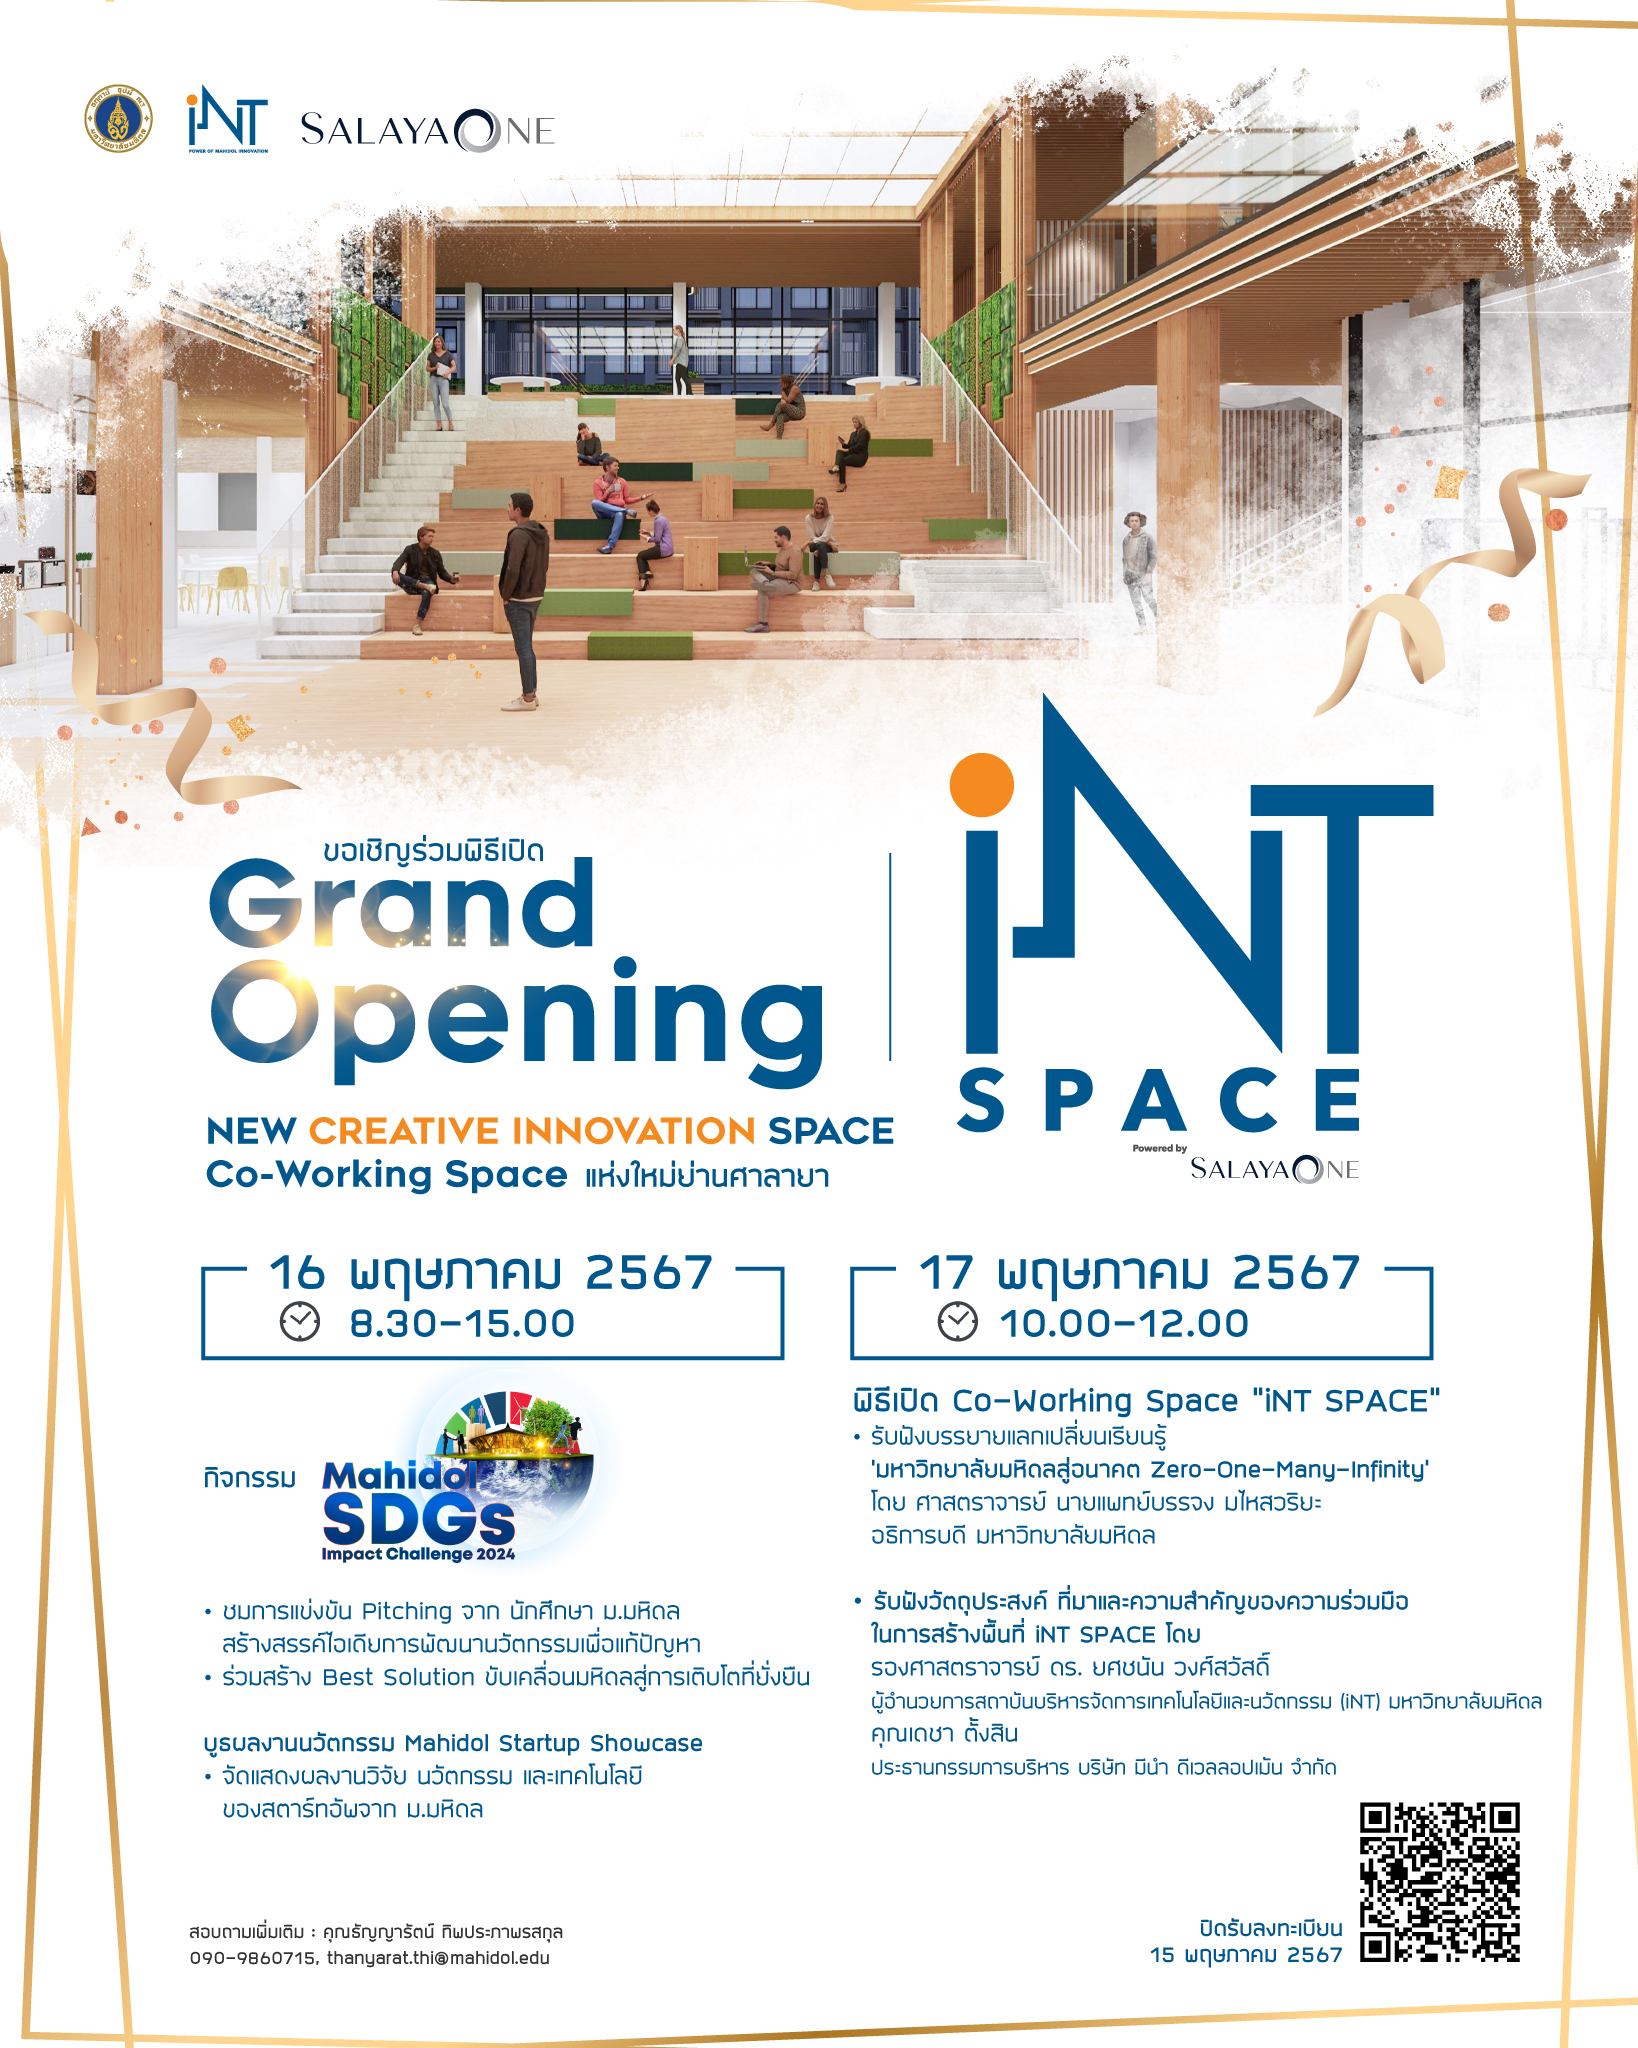 ขอเชิญชวนเข้าร่วมงานพิธิเปิด Grand Openning "iNT SPACE powered by SALAYA ONE" พื้นที่ Co-Working Space แห่งใหม่ ณโครงการ SALAYA ONE ซอยตั้งสิน ศาลายา ในวันที่ 16 - 17 พฤษภาคม 2567 !!